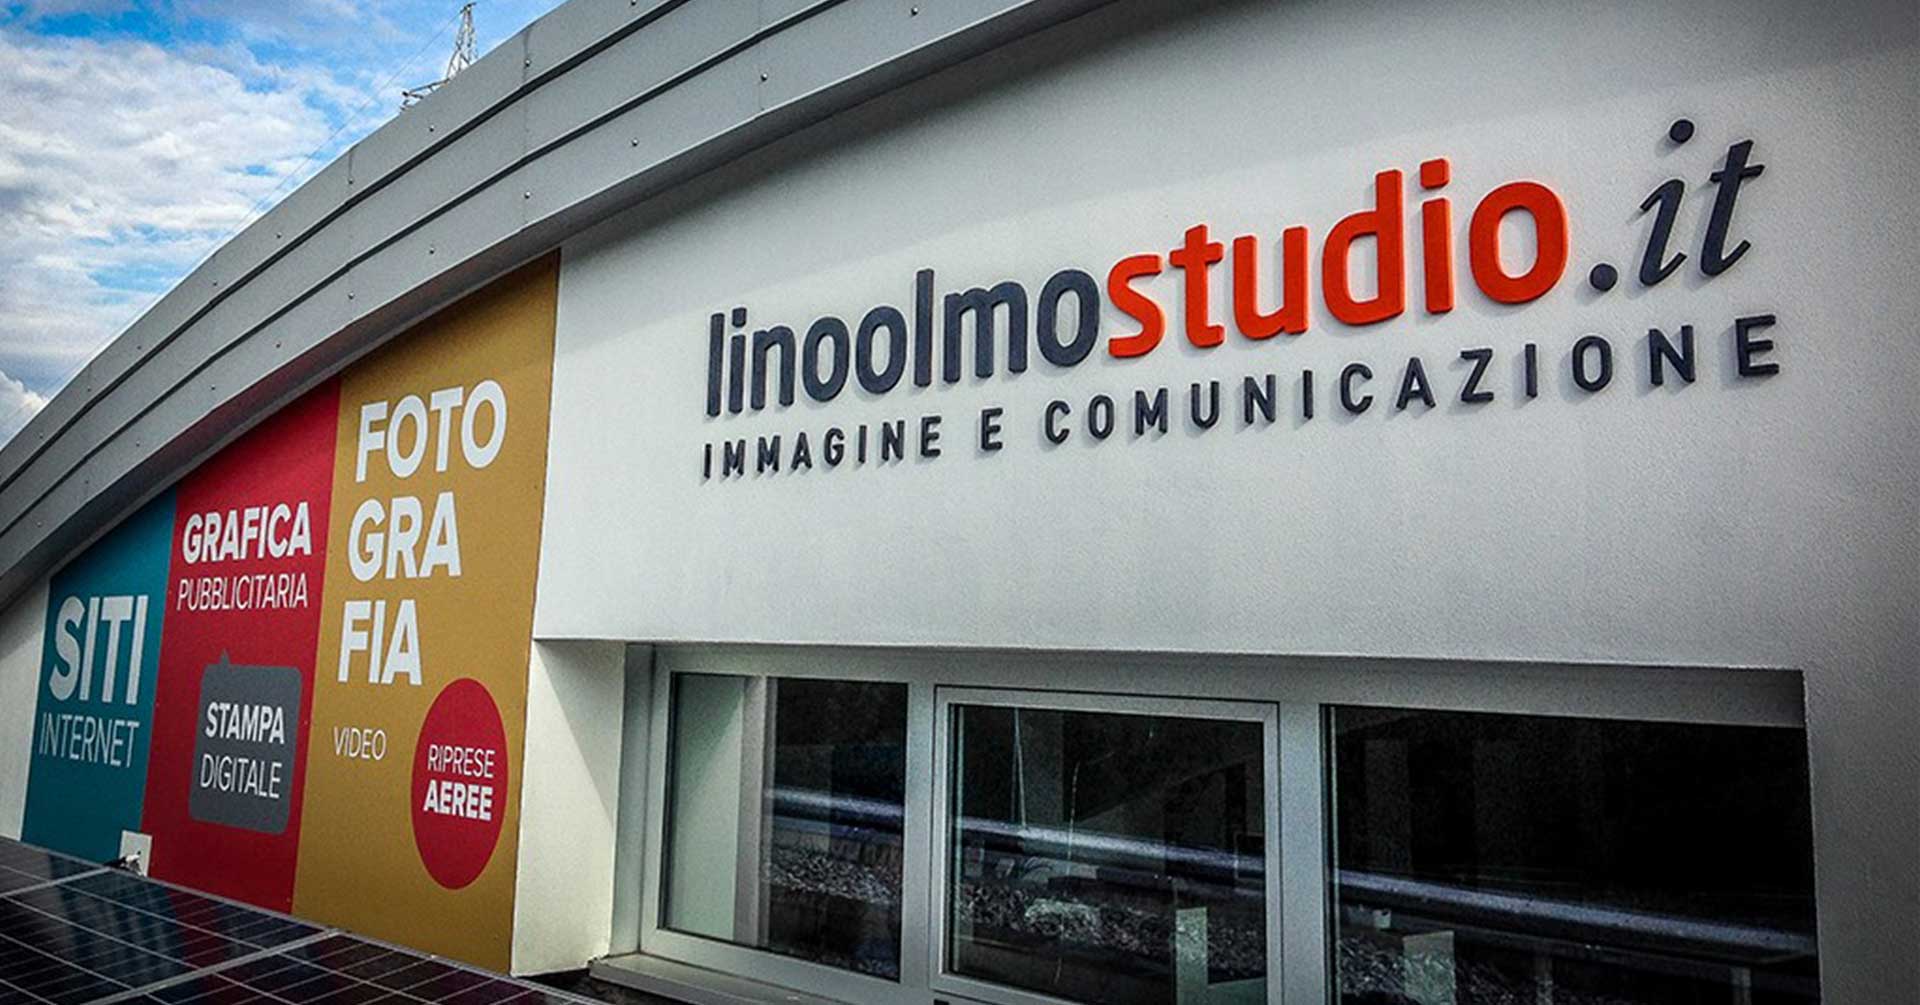 Linoolmo Studio